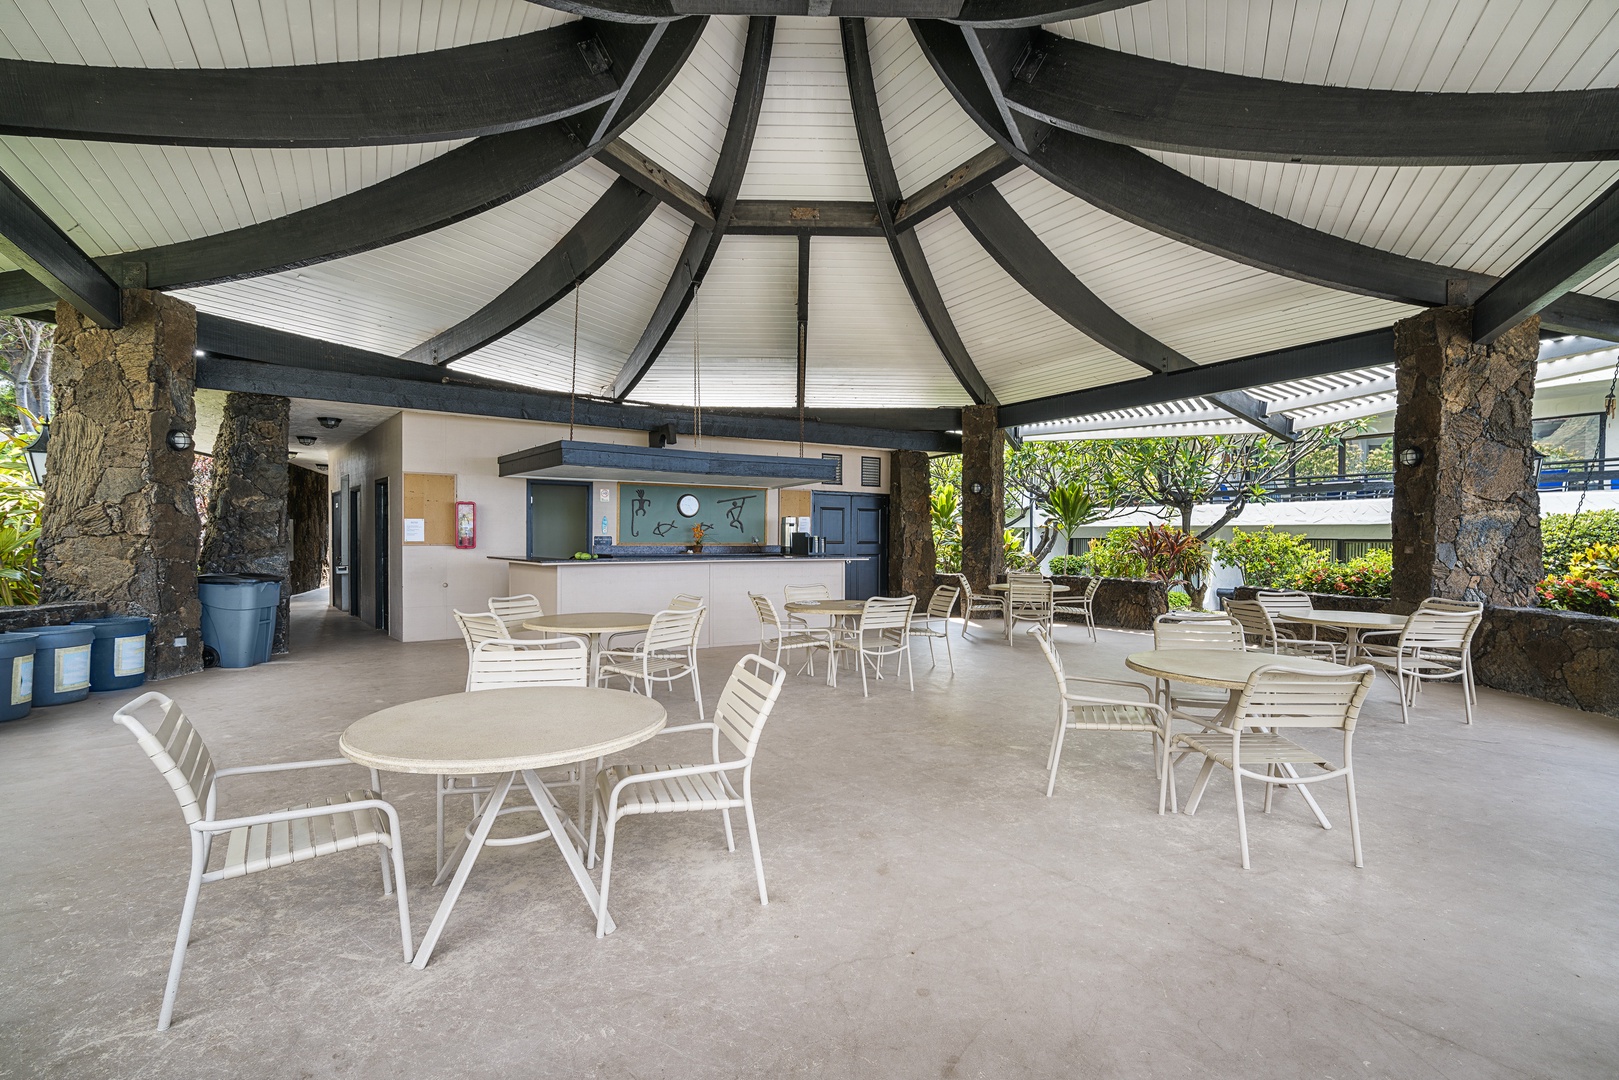 Kailua Kona Vacation Rentals, Casa De Emdeko 235 - Casa De Emdeko cabana area